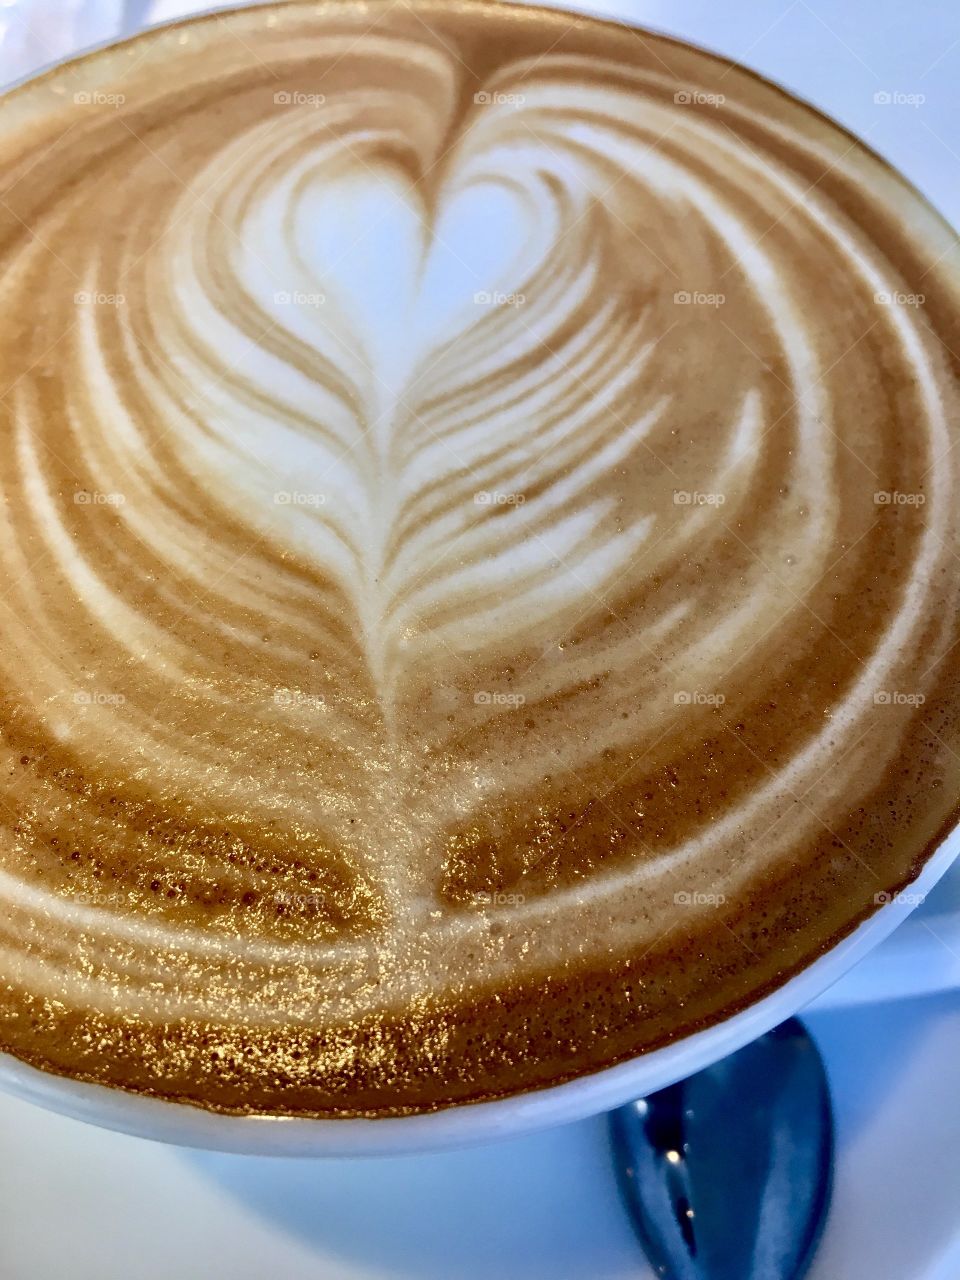 Heart on latte